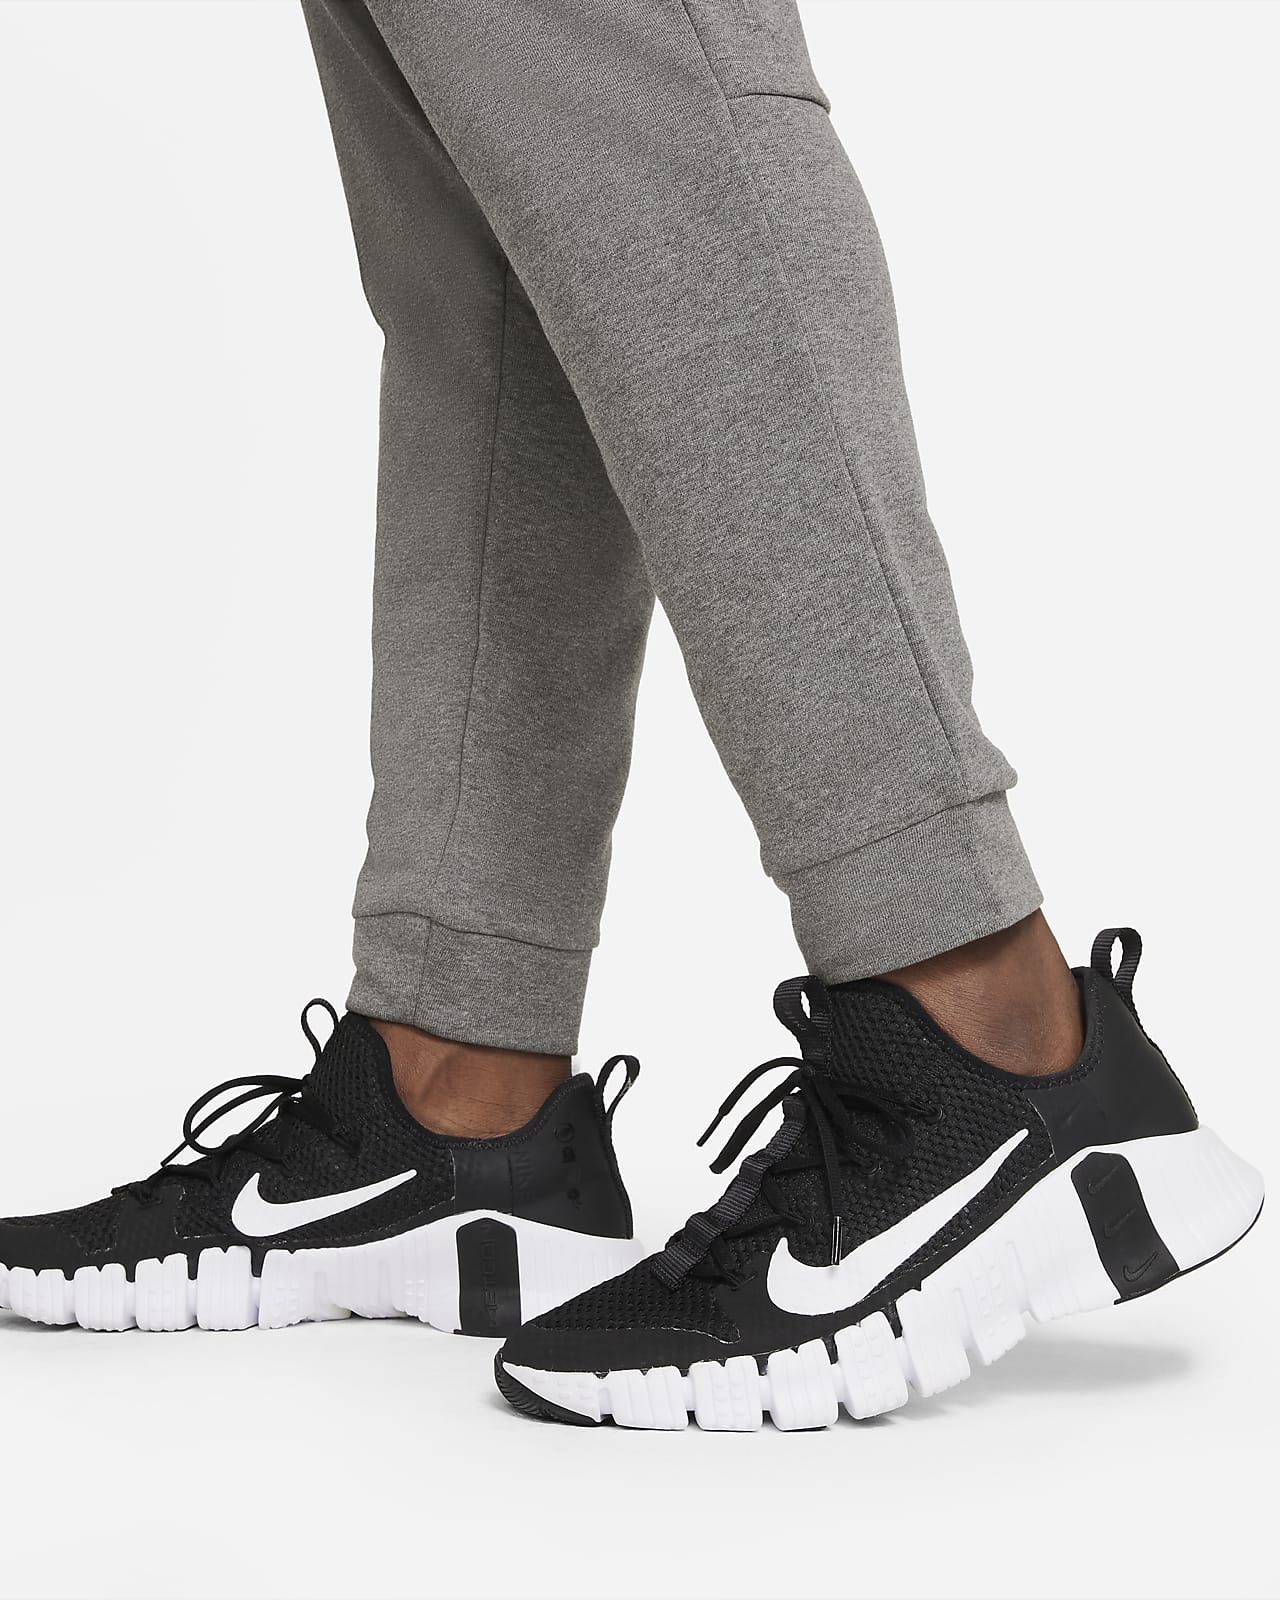 New Nike Dri-Fit Flex Swift Running Pants Mens Size XXL Gridiron 928583-081